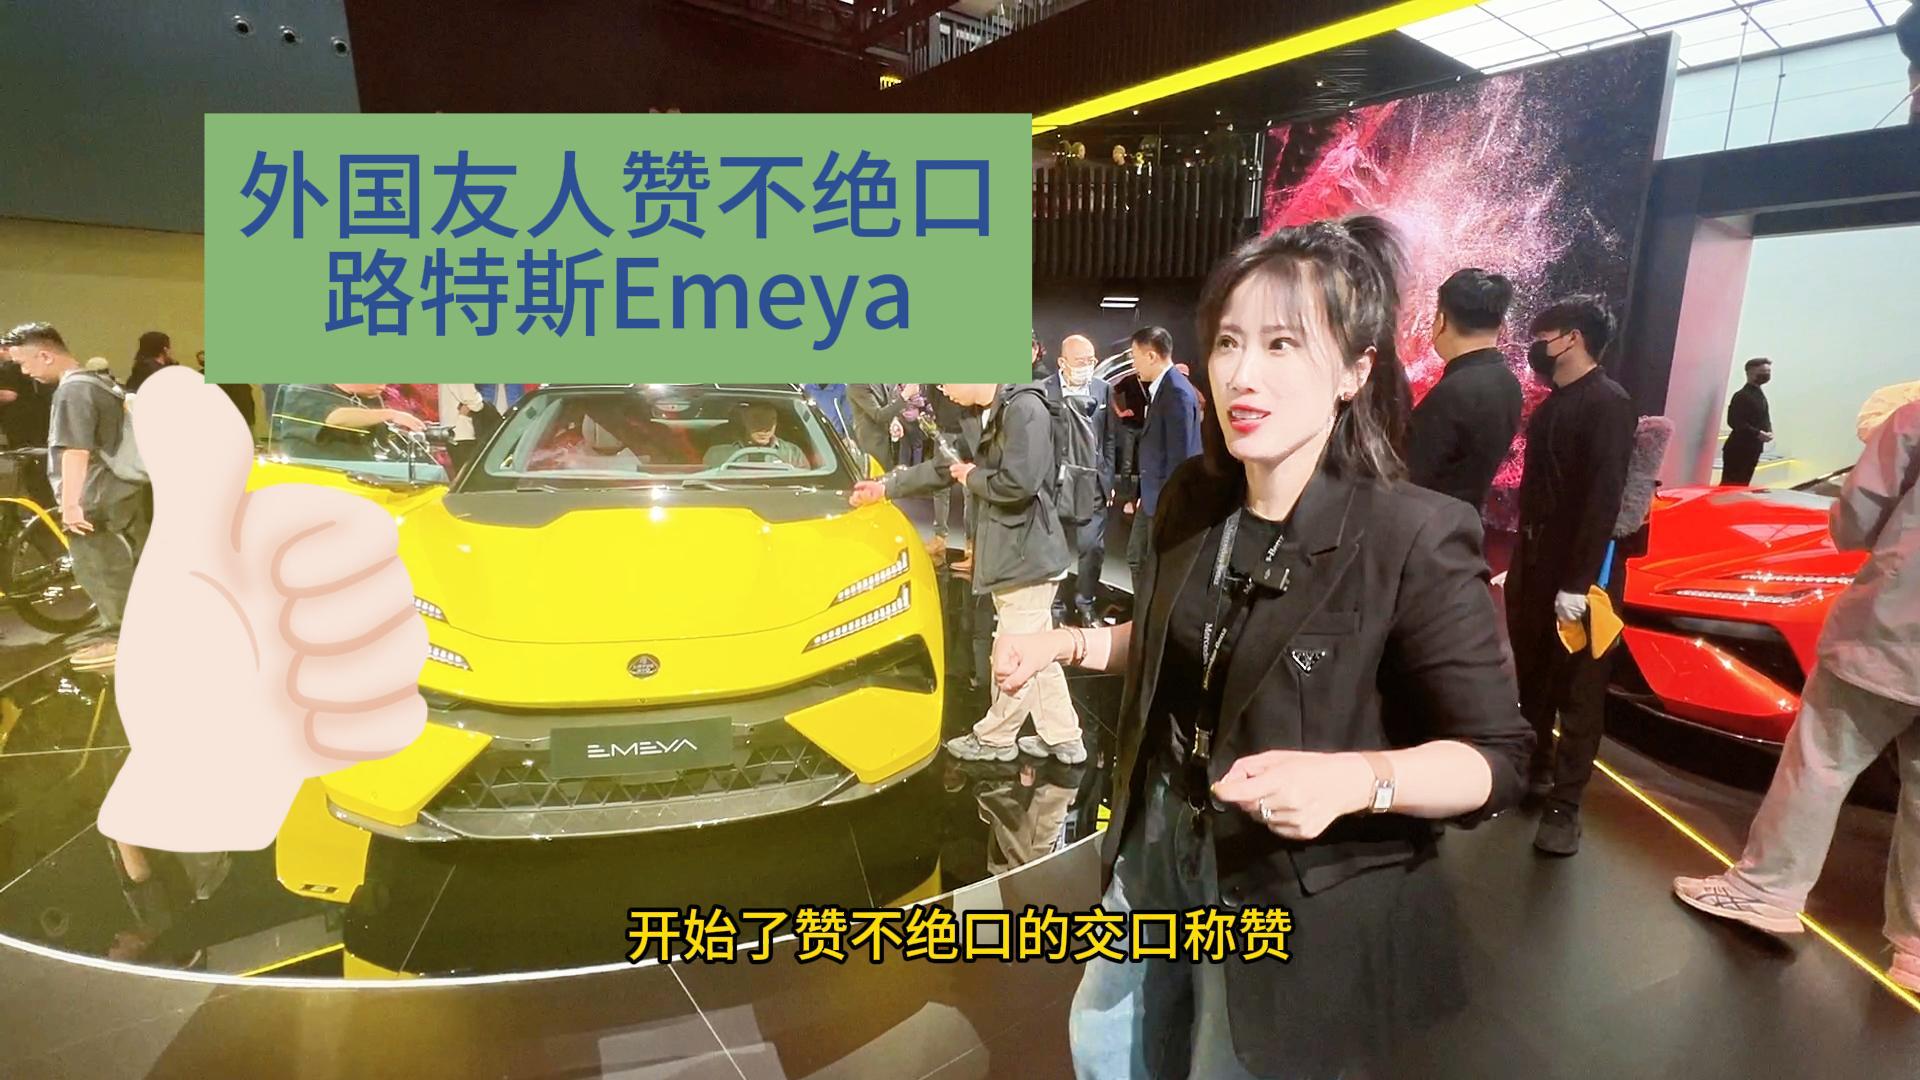 友人交口称赞 路特斯Emeya亮相广州车展 全是优点视频